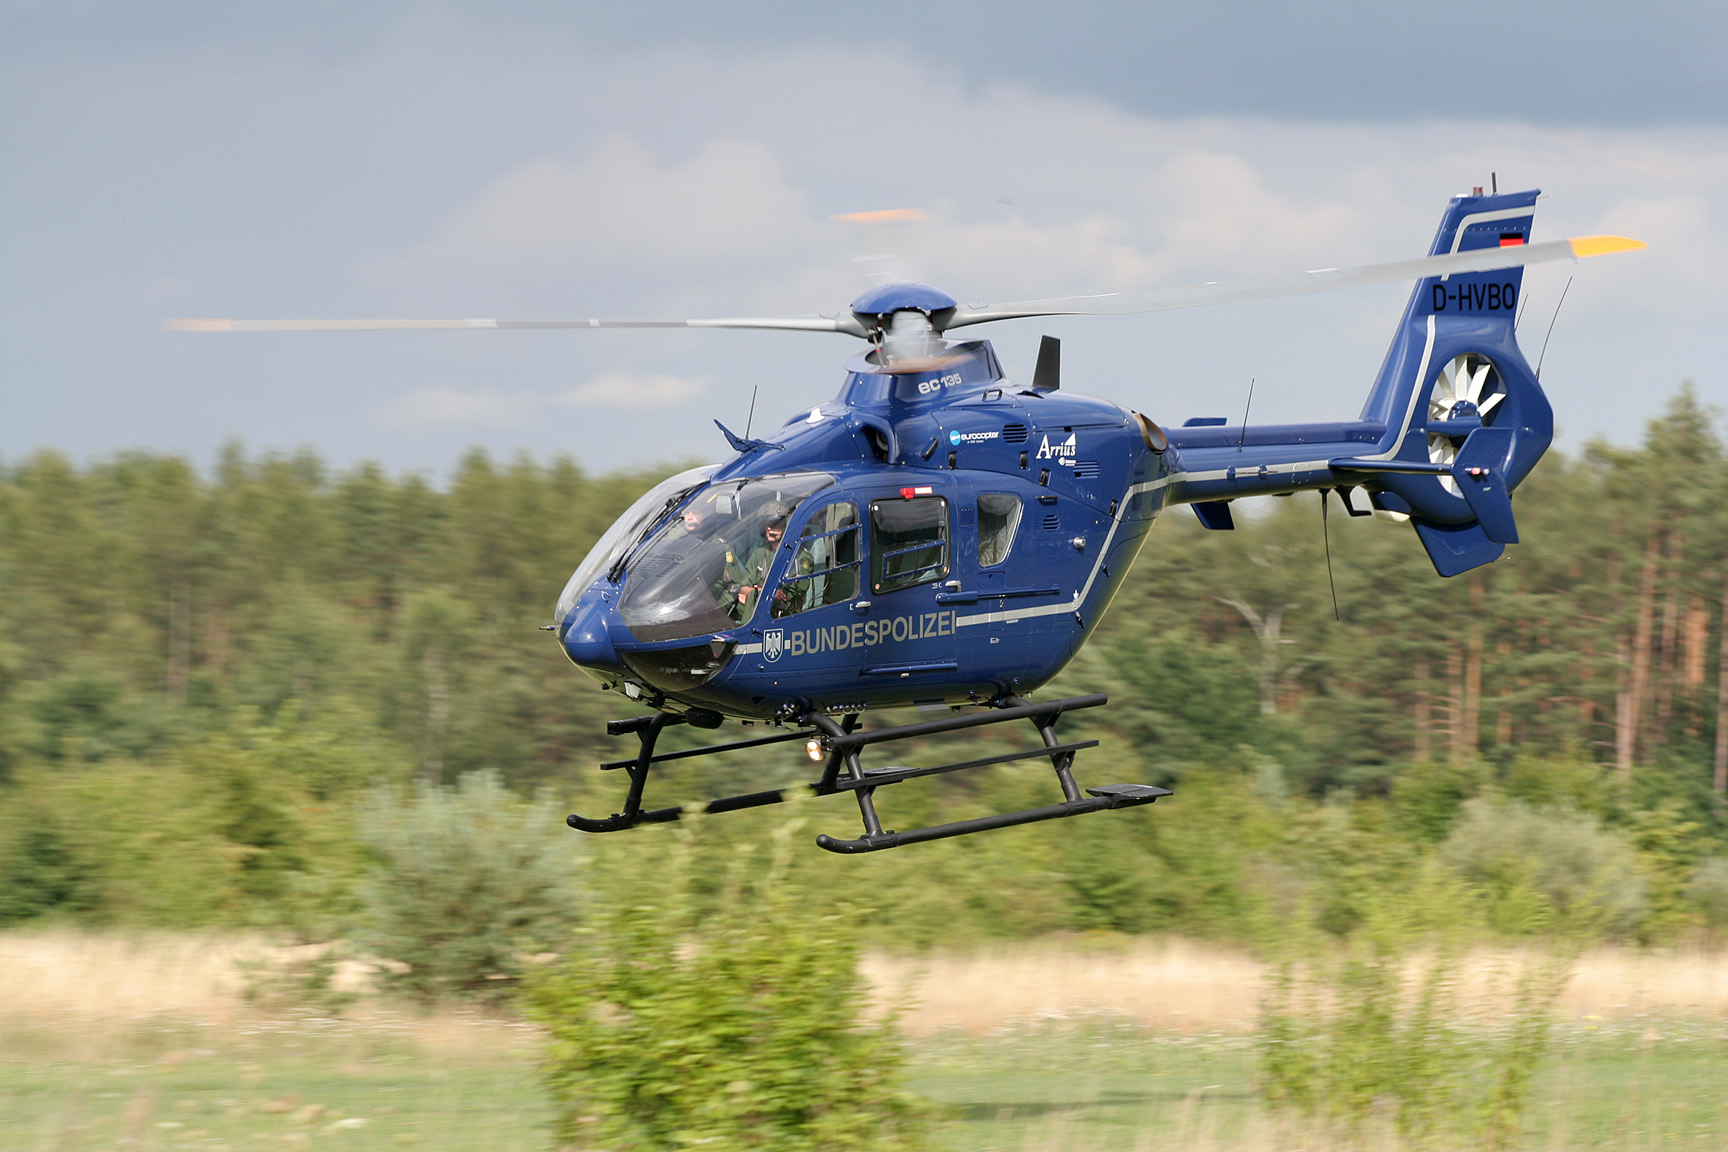 Eurocopter EC-135/635 #05